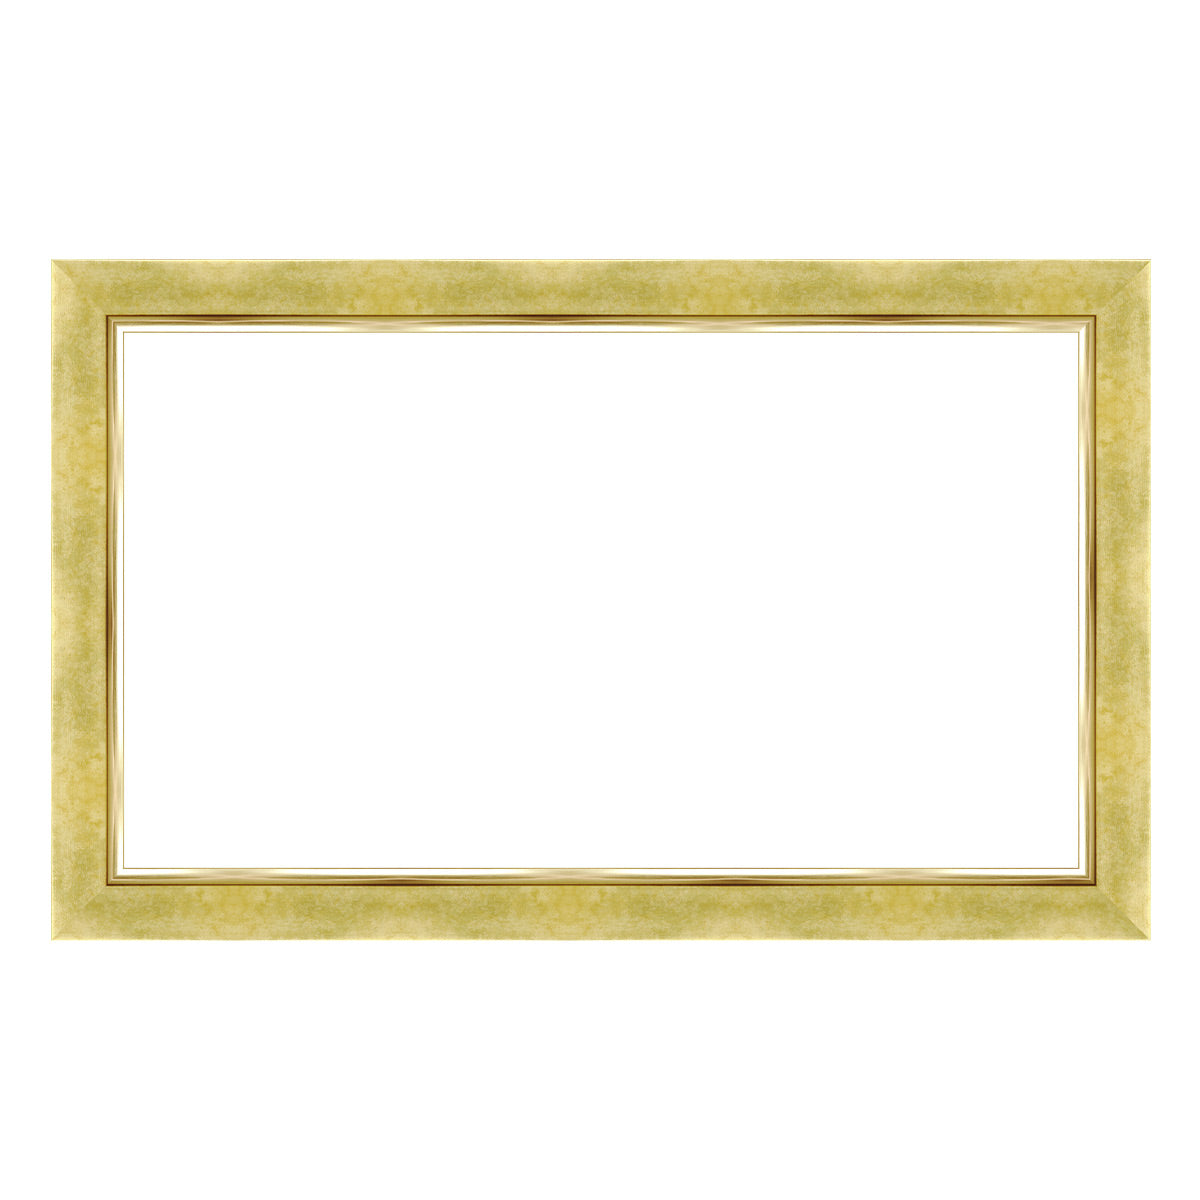 Deco TV Frames Customizable Frame for Samsung The Frame 2021 50" TV (Contemporary Gold)